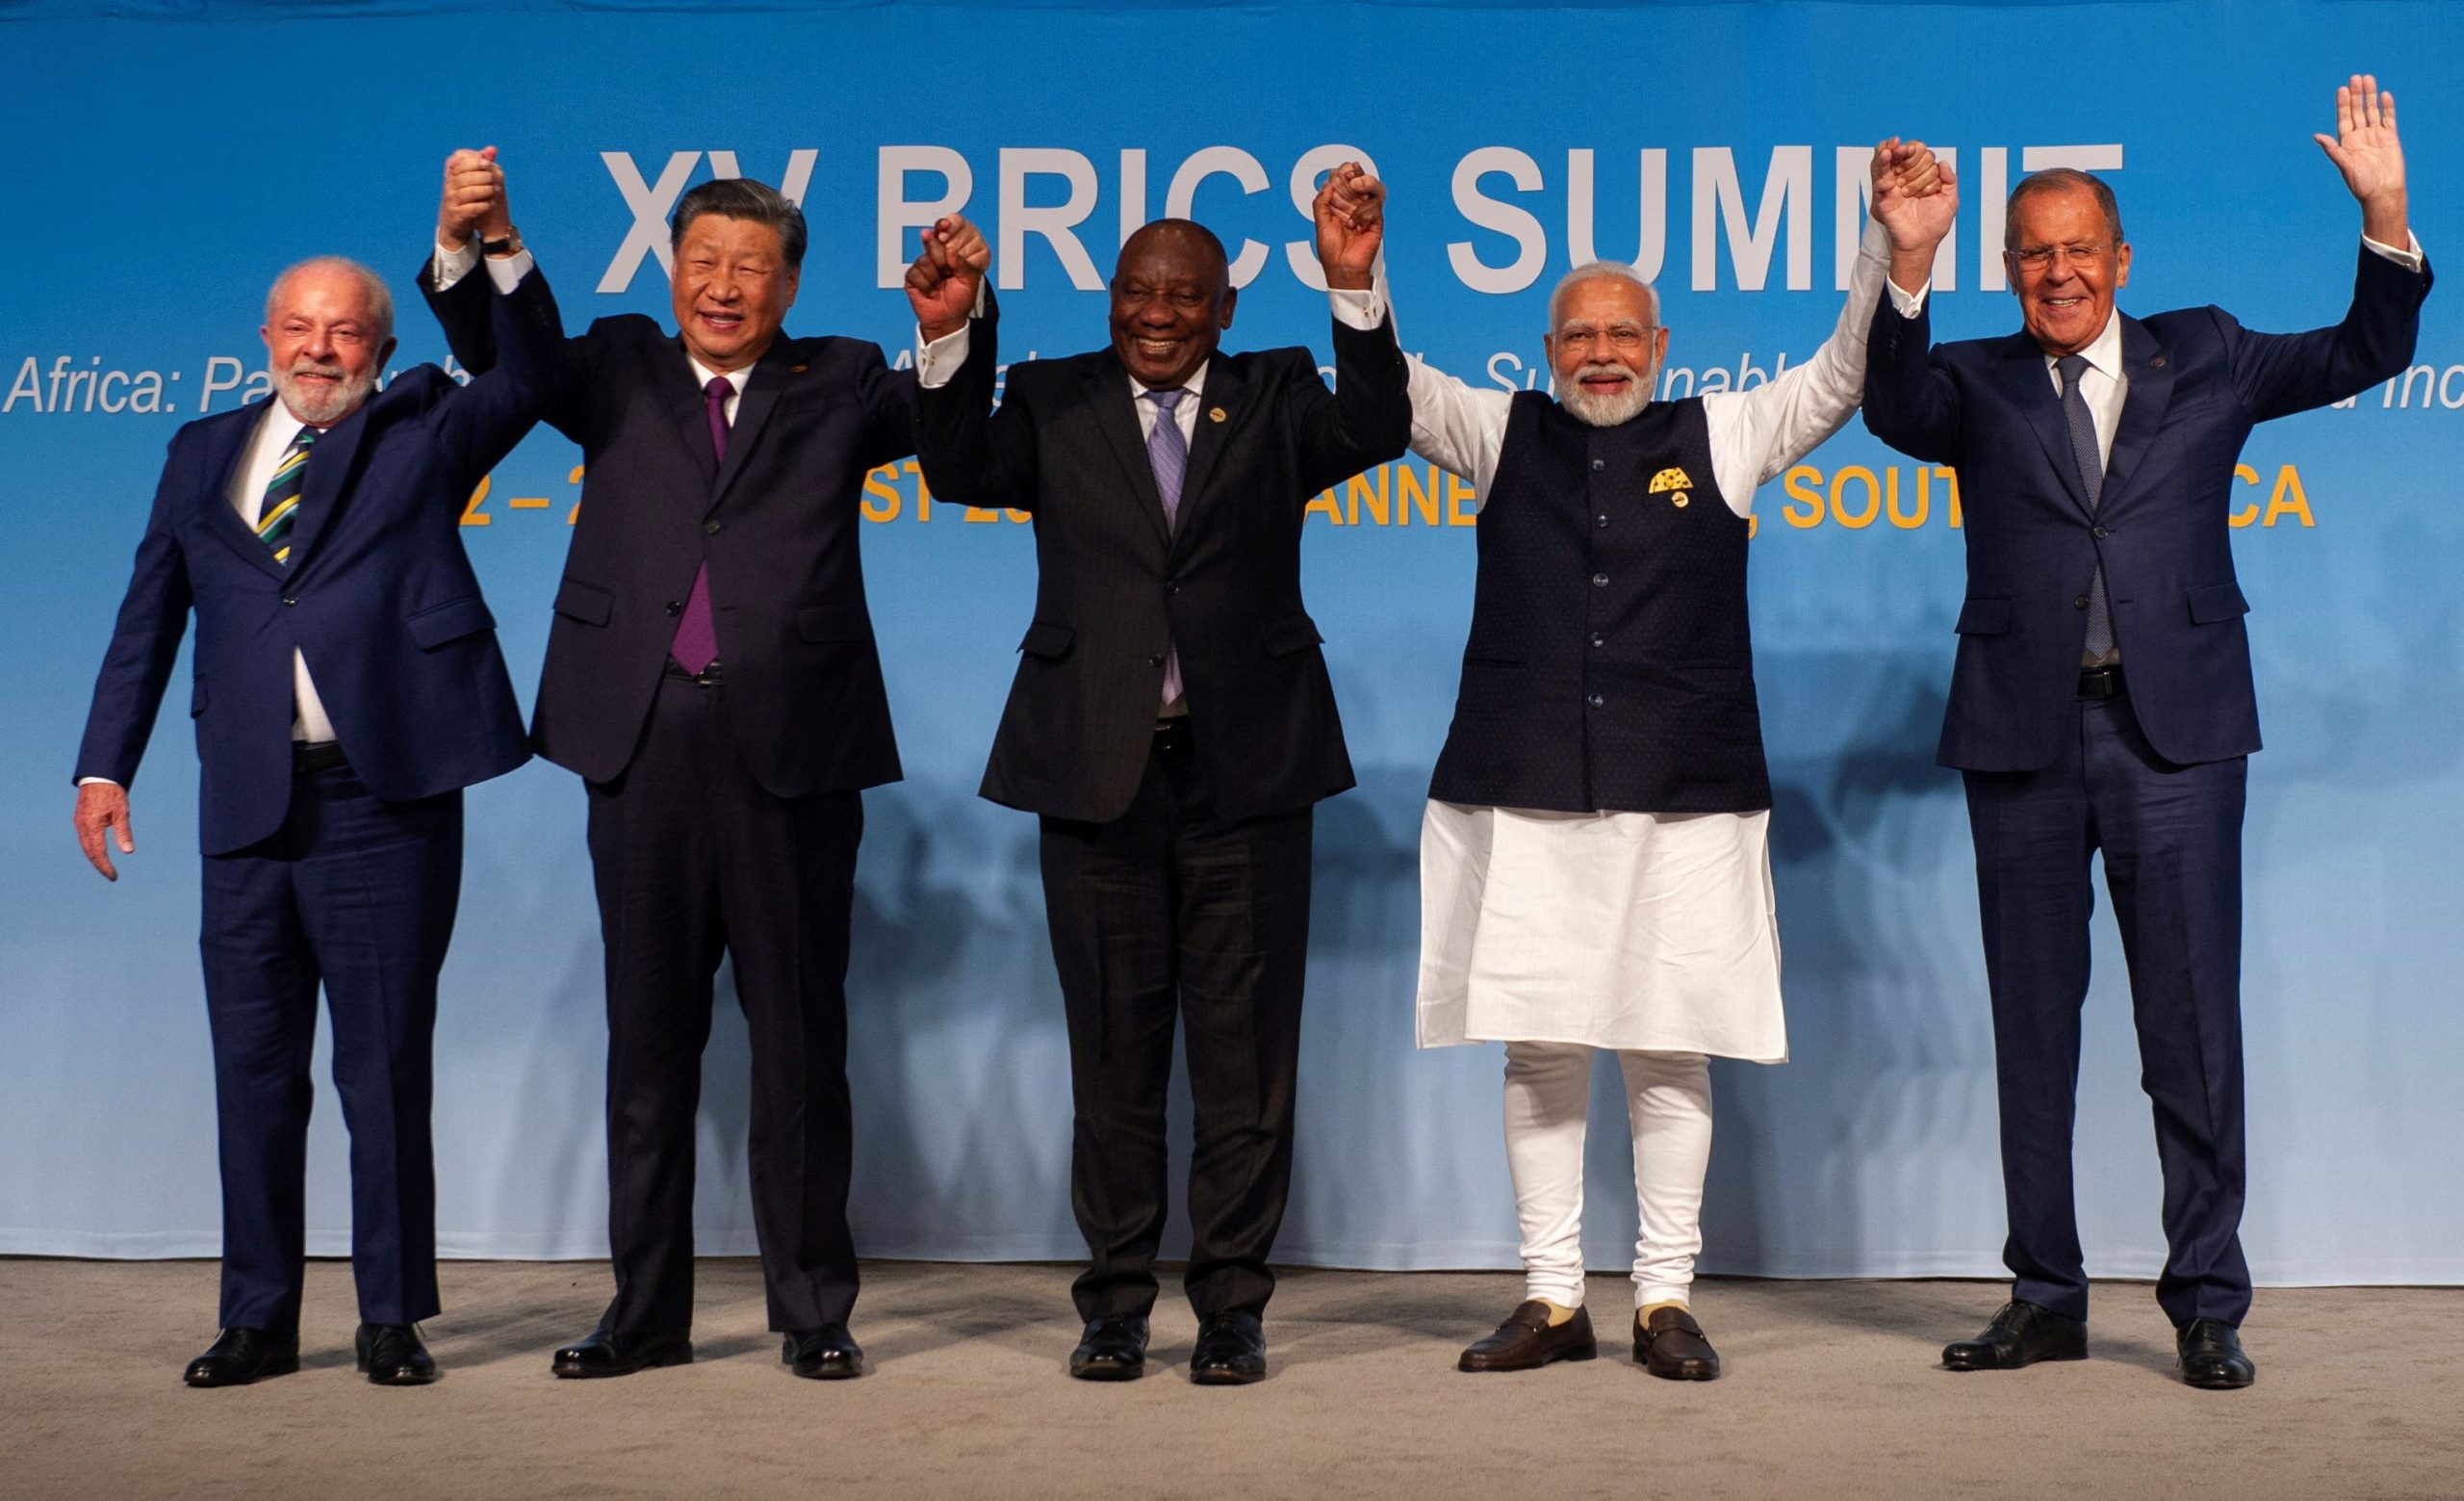 Η διεύρυνση της ομάδας BRICS: Προς έναν νέο παγκόσμιο διπολικό κόσμο σε πολιτικοοικονομική μορφή;